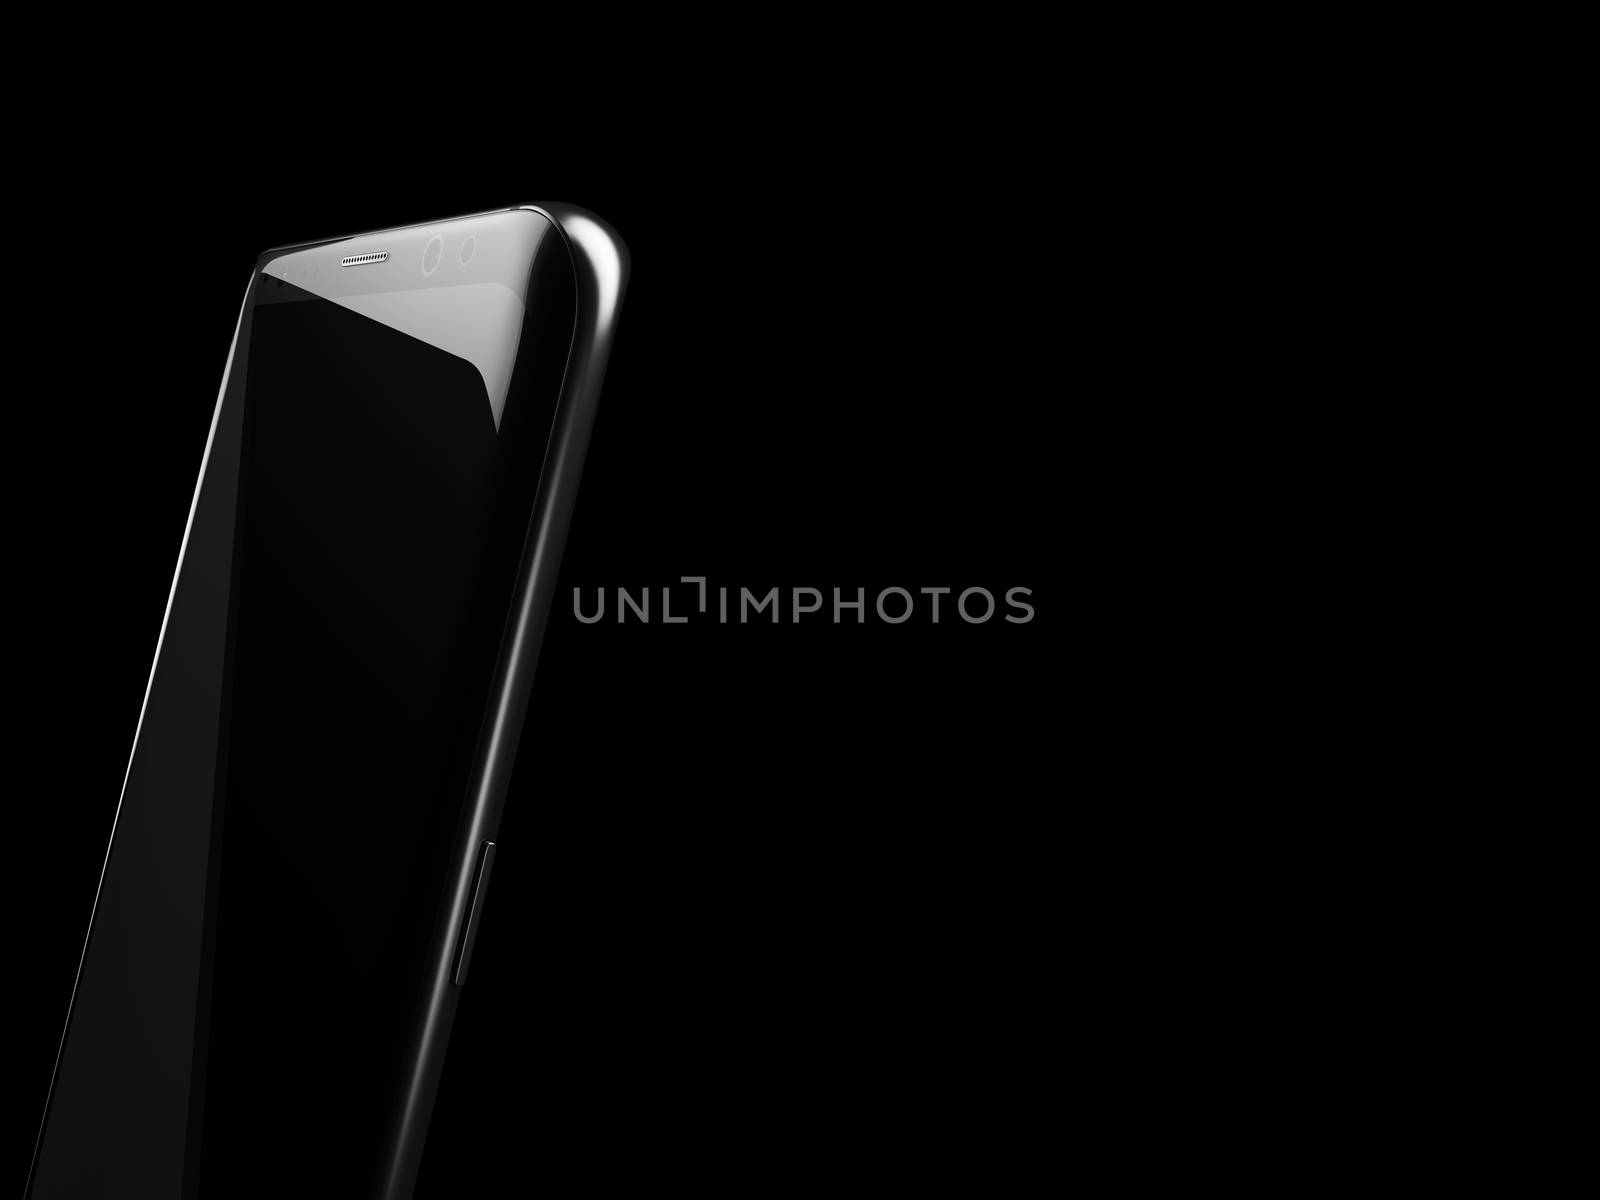 3d Illustration of Black smartphone on a black background.